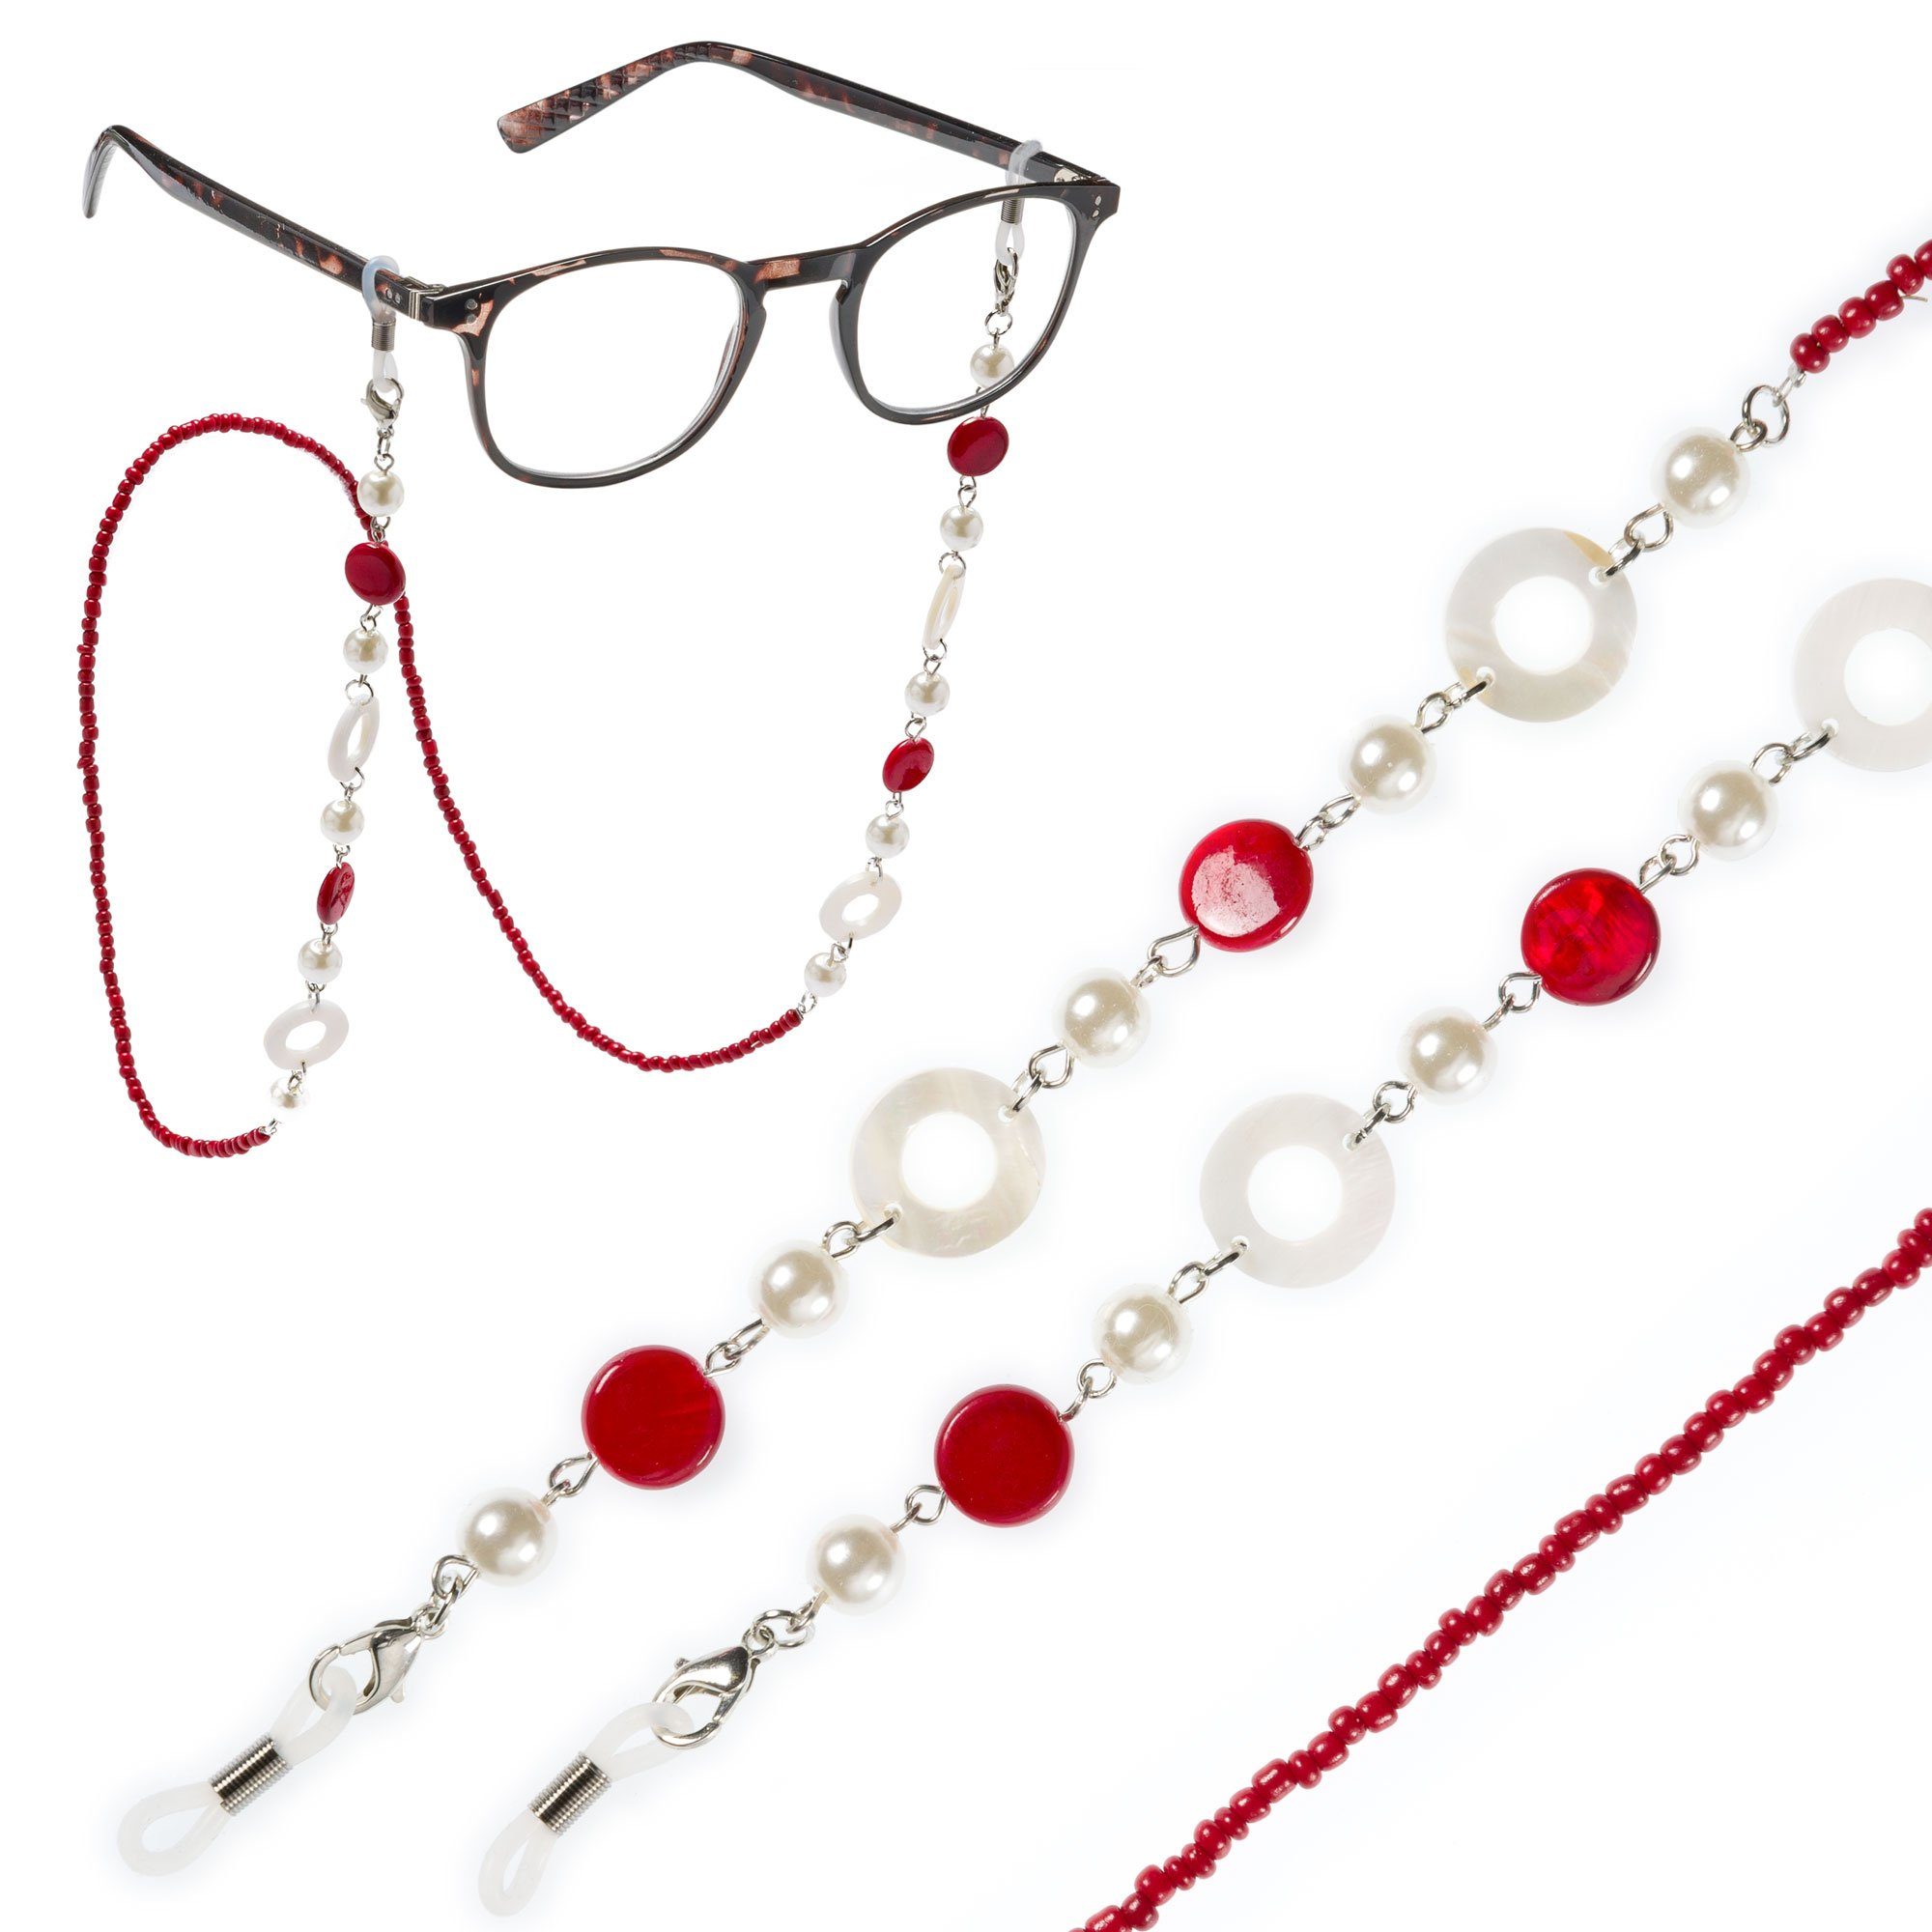 FEFI Brillenkette "ELLA" mit echtem Perlmutt und synth. Perlen, in goldfarbenem Organza-Säckchen + Faltschachtel